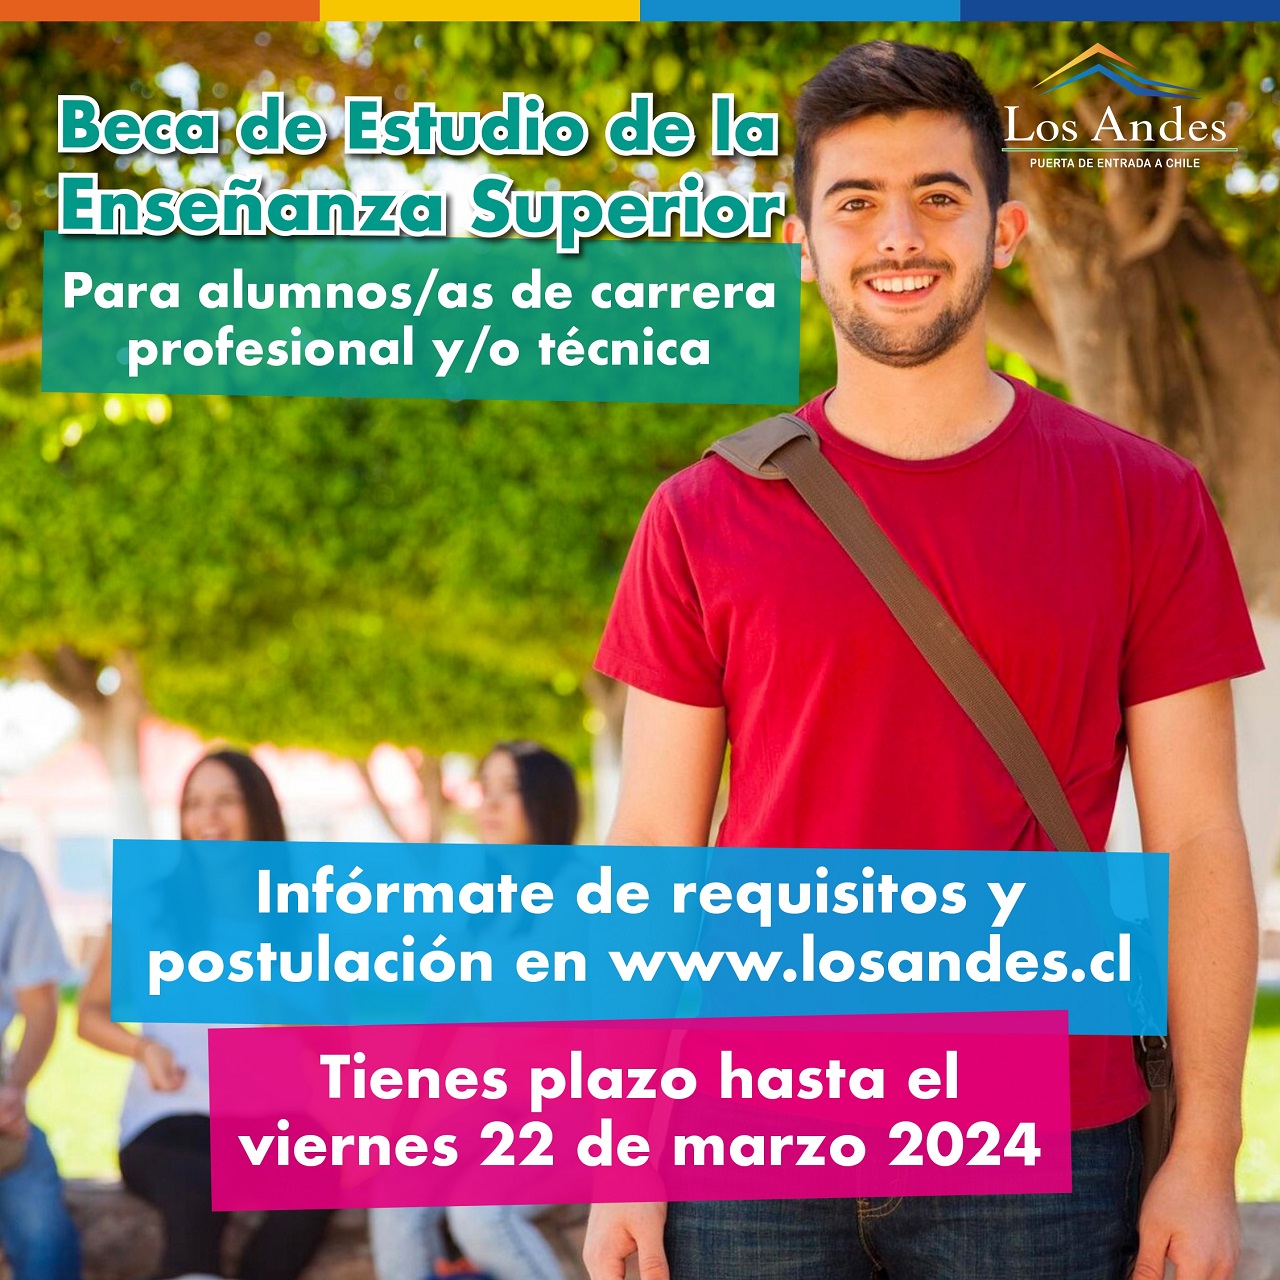 LOS ANDES: Municipalidad de Los Andes abre convocatoria para Becas de Educación Superior y Transporte Rural